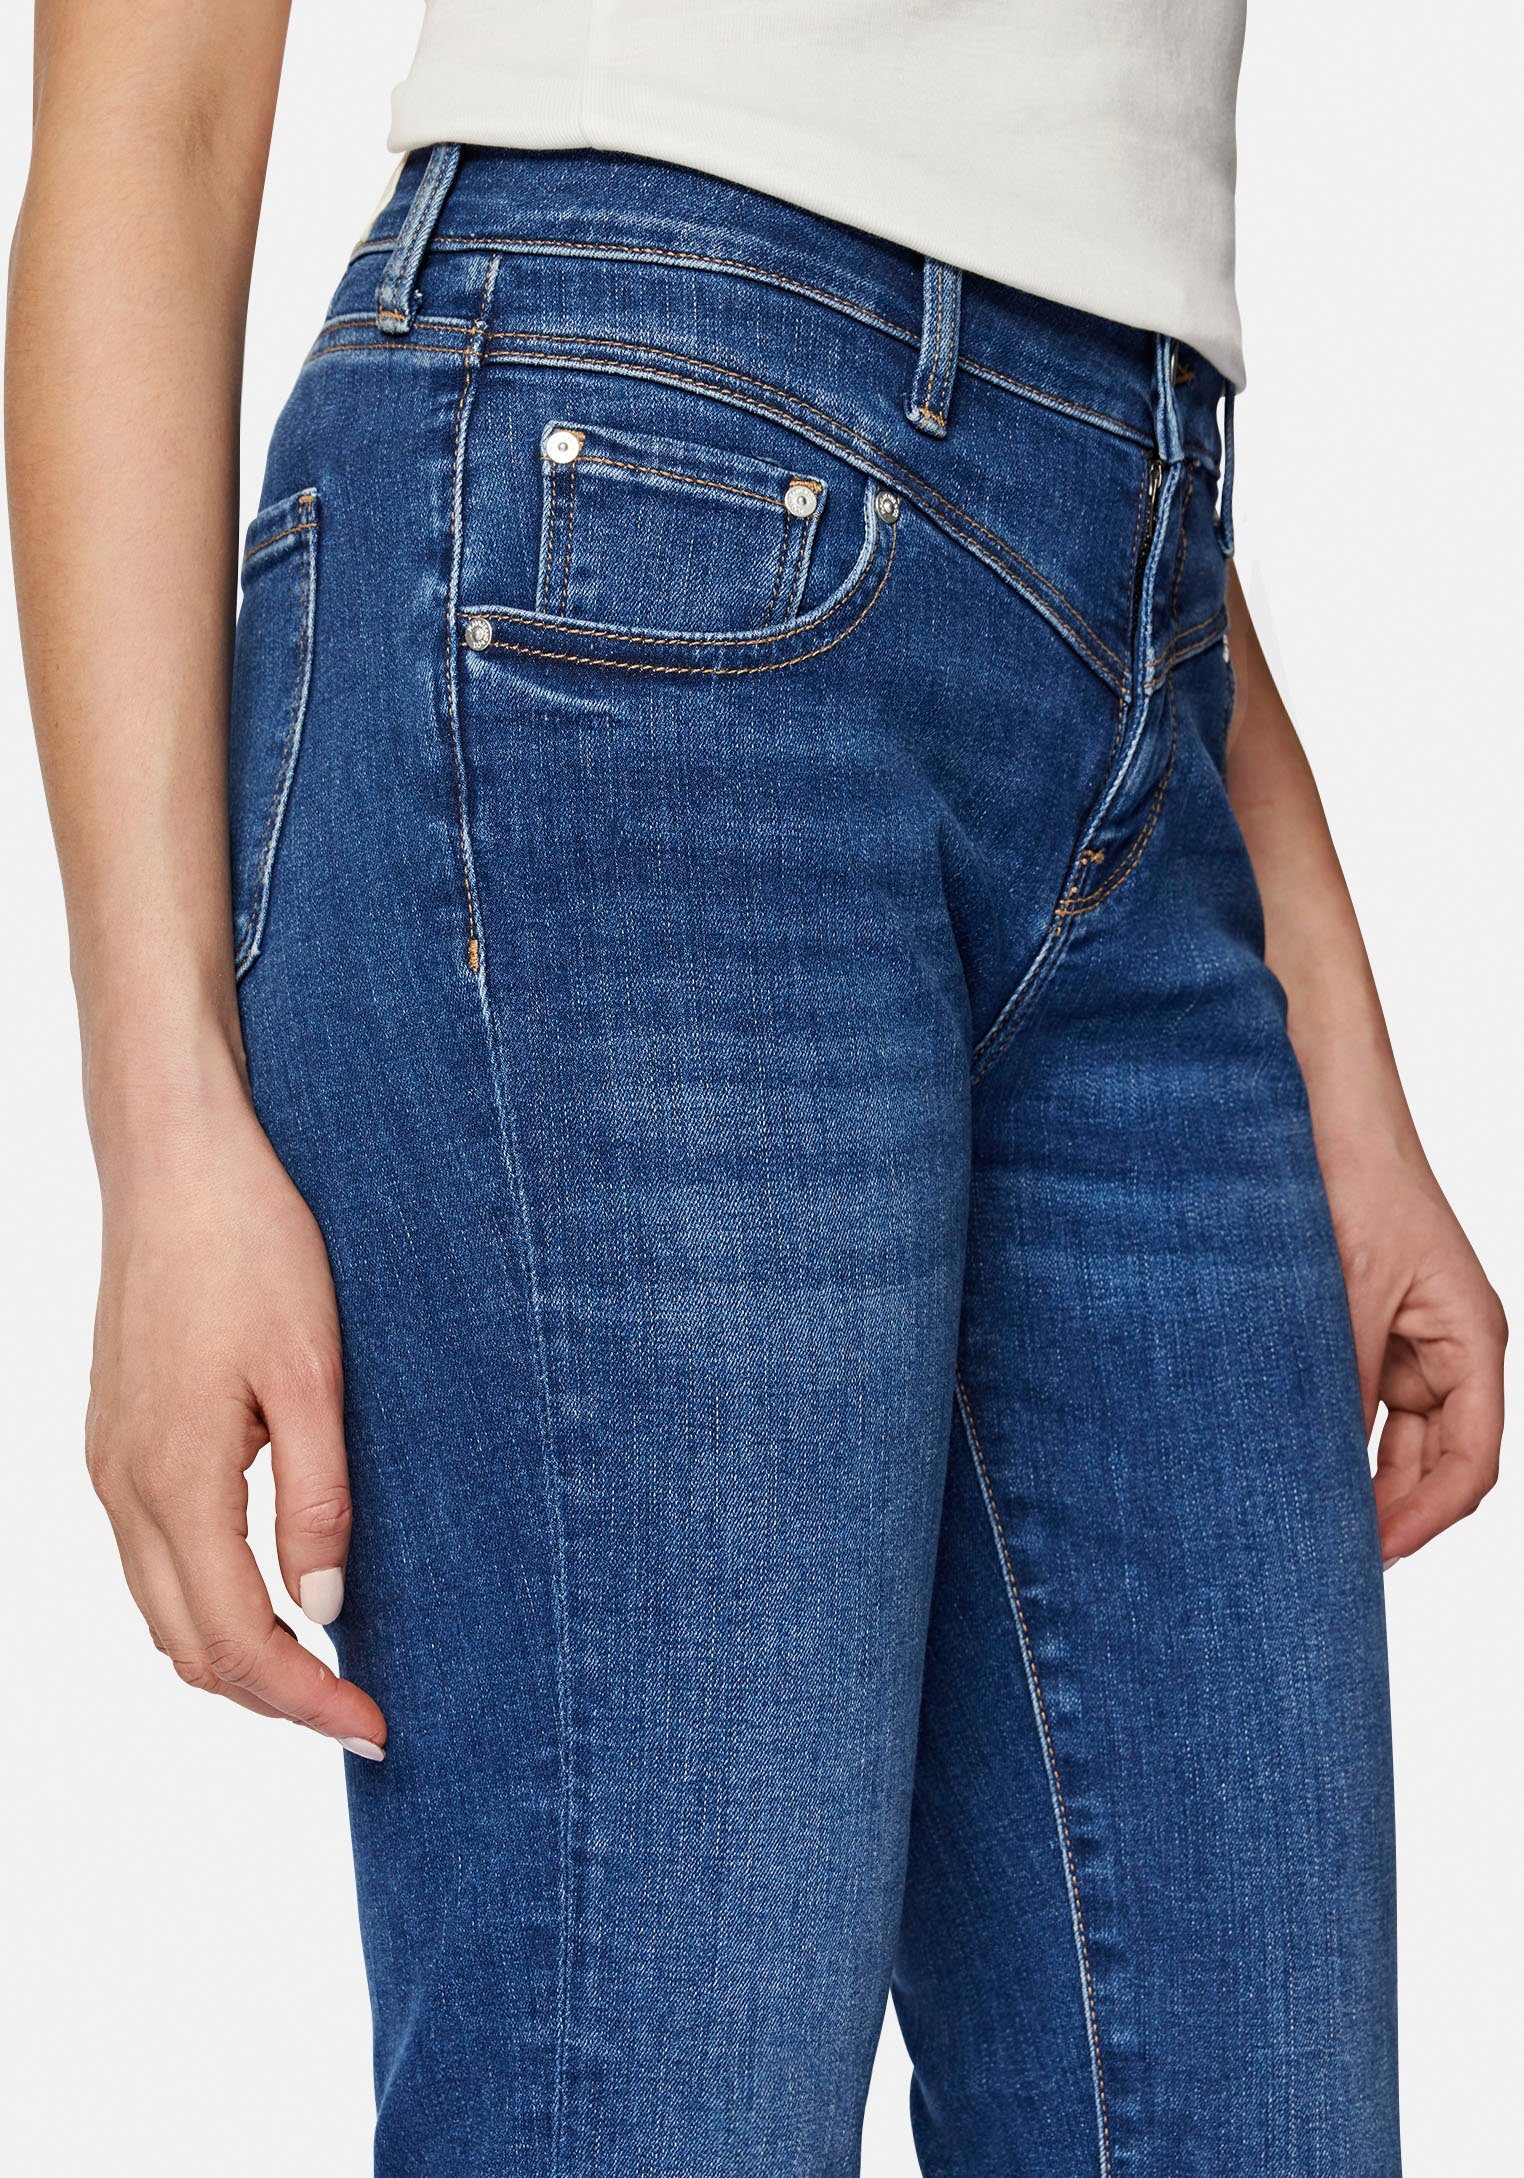 Mavi Slim-fit-Jeans trageangenehmer blue Verarbeitung hochwertiger mid dank Stretchdenim